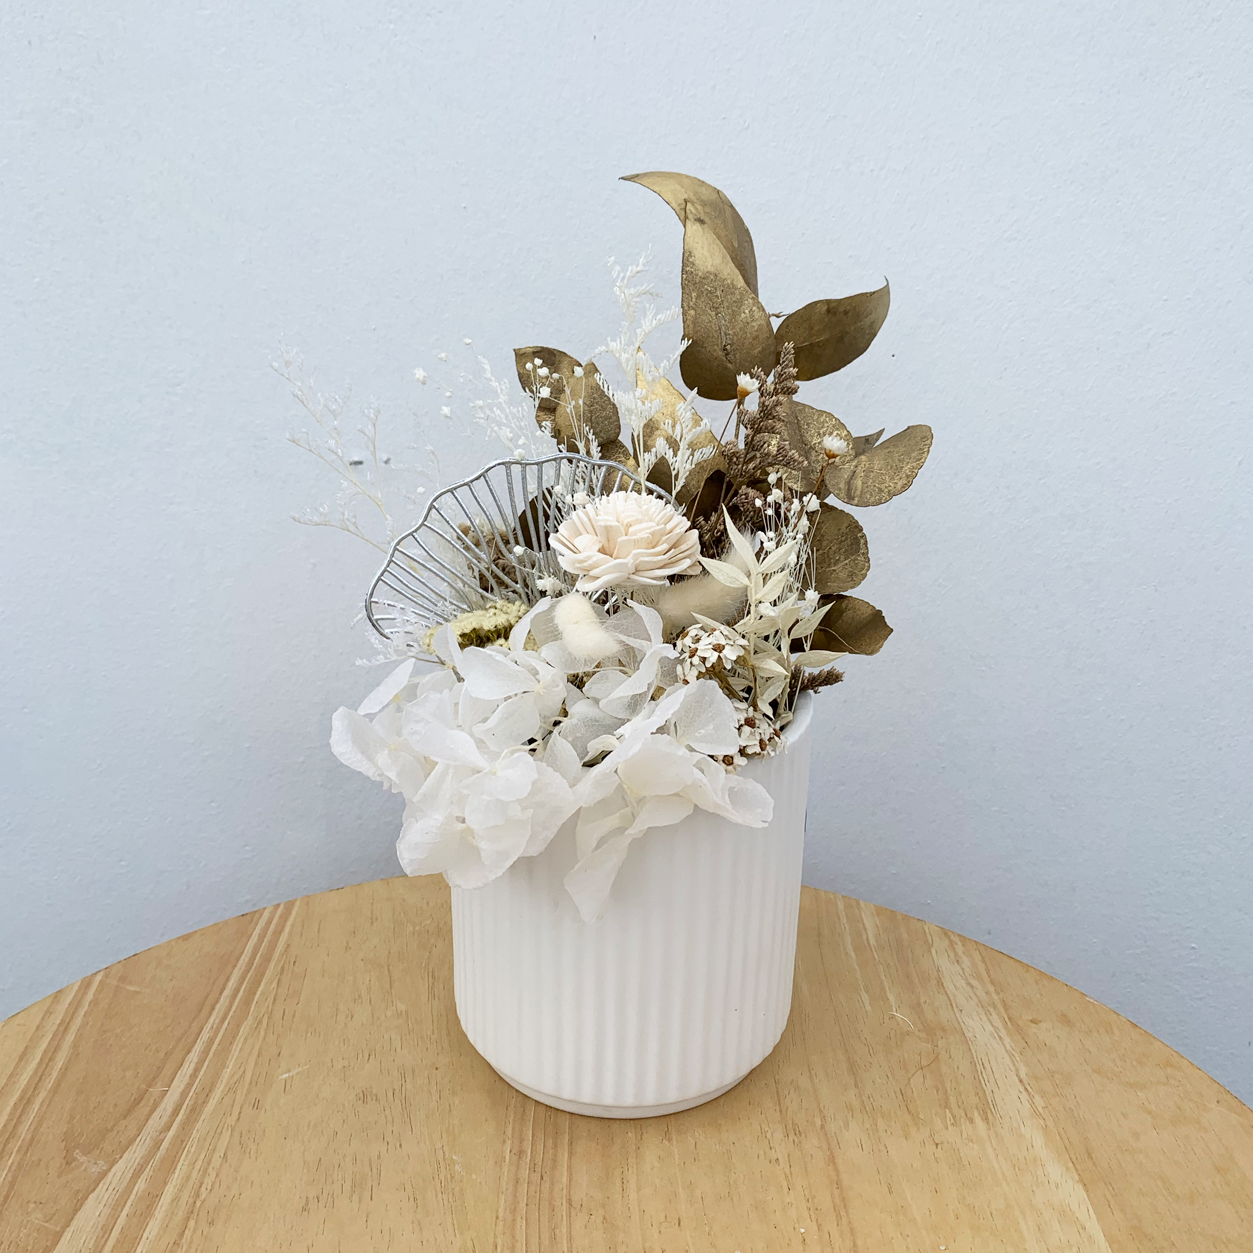 Dried Flower Arrangement - Offcuts in Vase